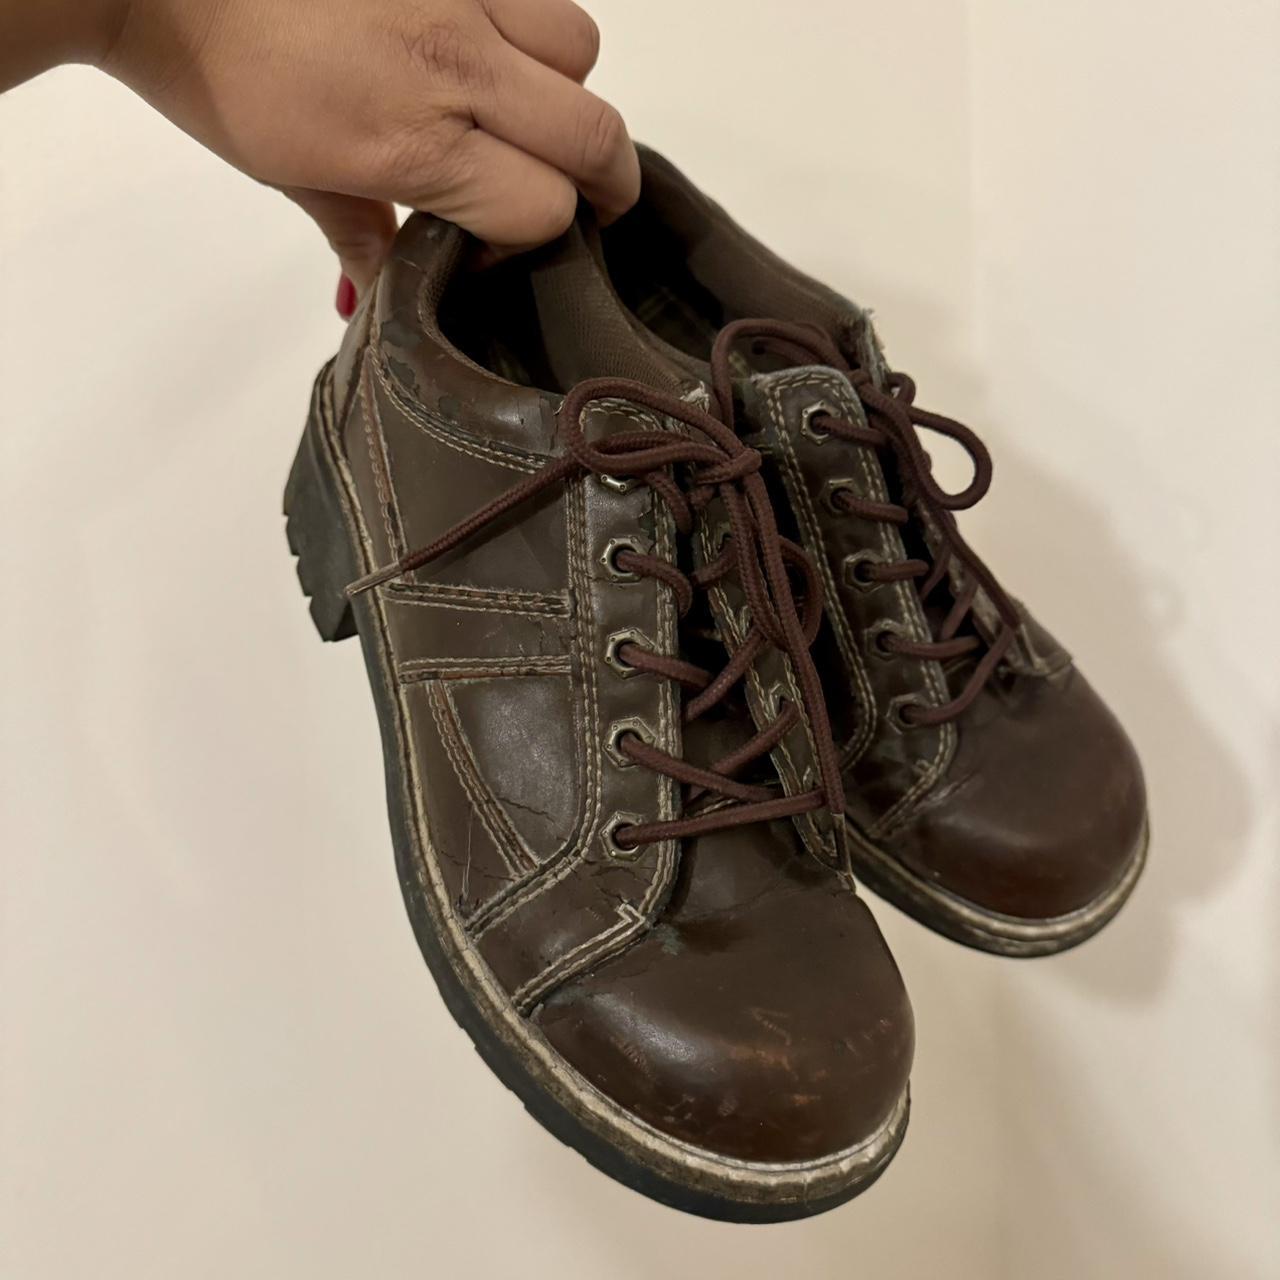 Vintage Lower East side brown sneakers / Oxfords... - Depop